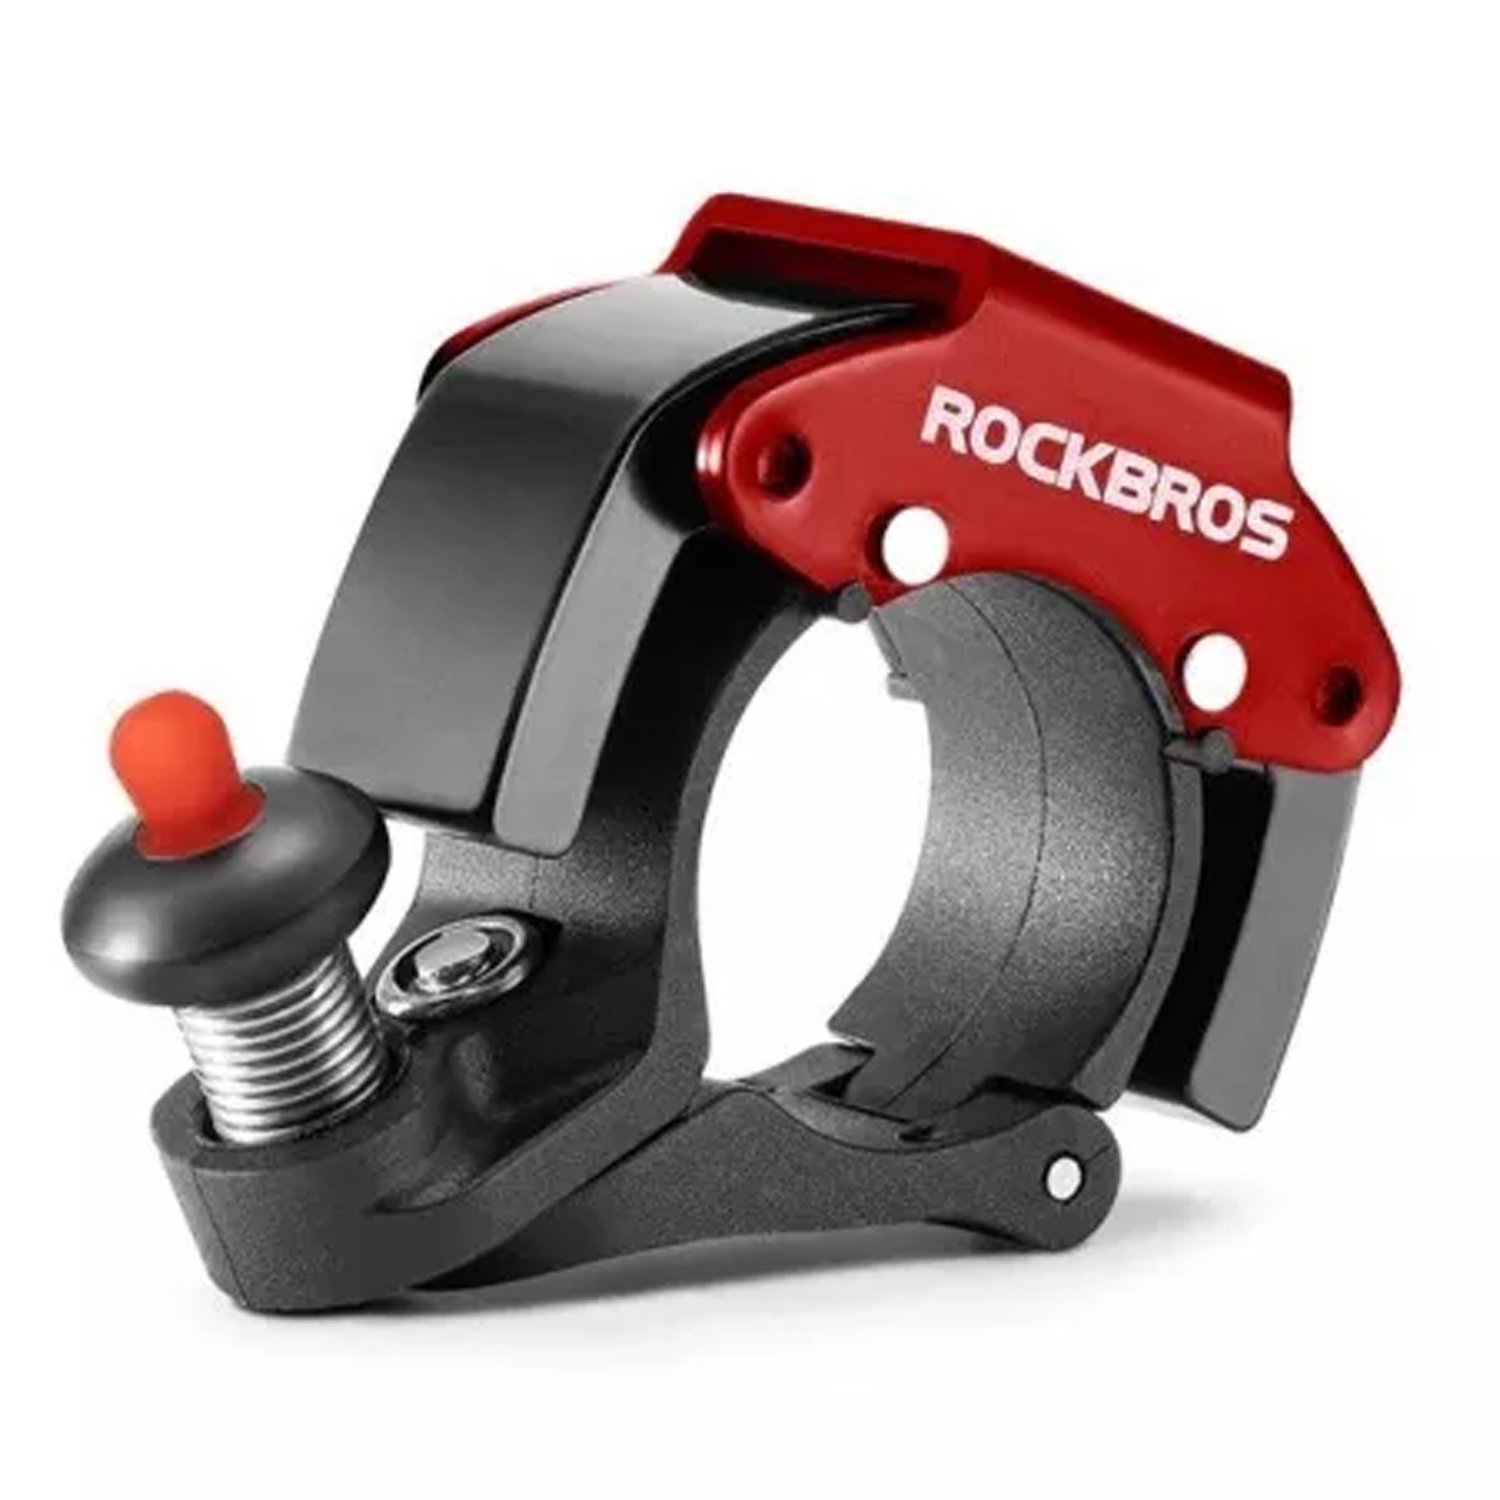 Звонок велосипедный ROCKBROS, D22.2 мм, черный с красным, RB_34210009001 звонок велосипедный rockbros на руль золотой rb 15 1bg